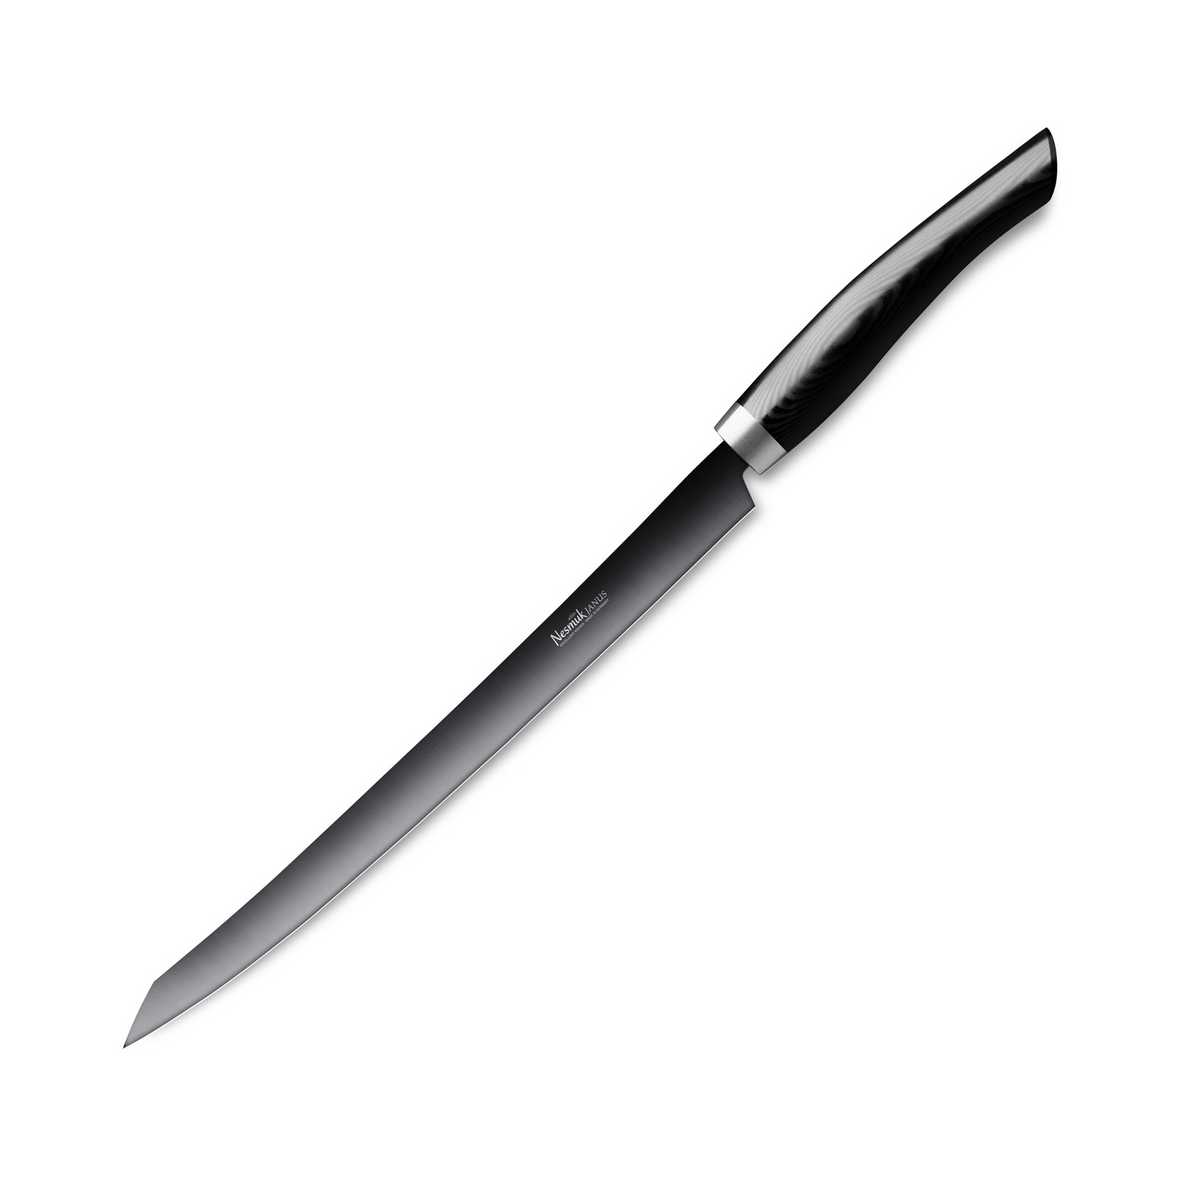 Nesmuk Janus Slicer 26 cm - Niobstahl mit DLC-Beschichtung - Griff Micarta schwarz